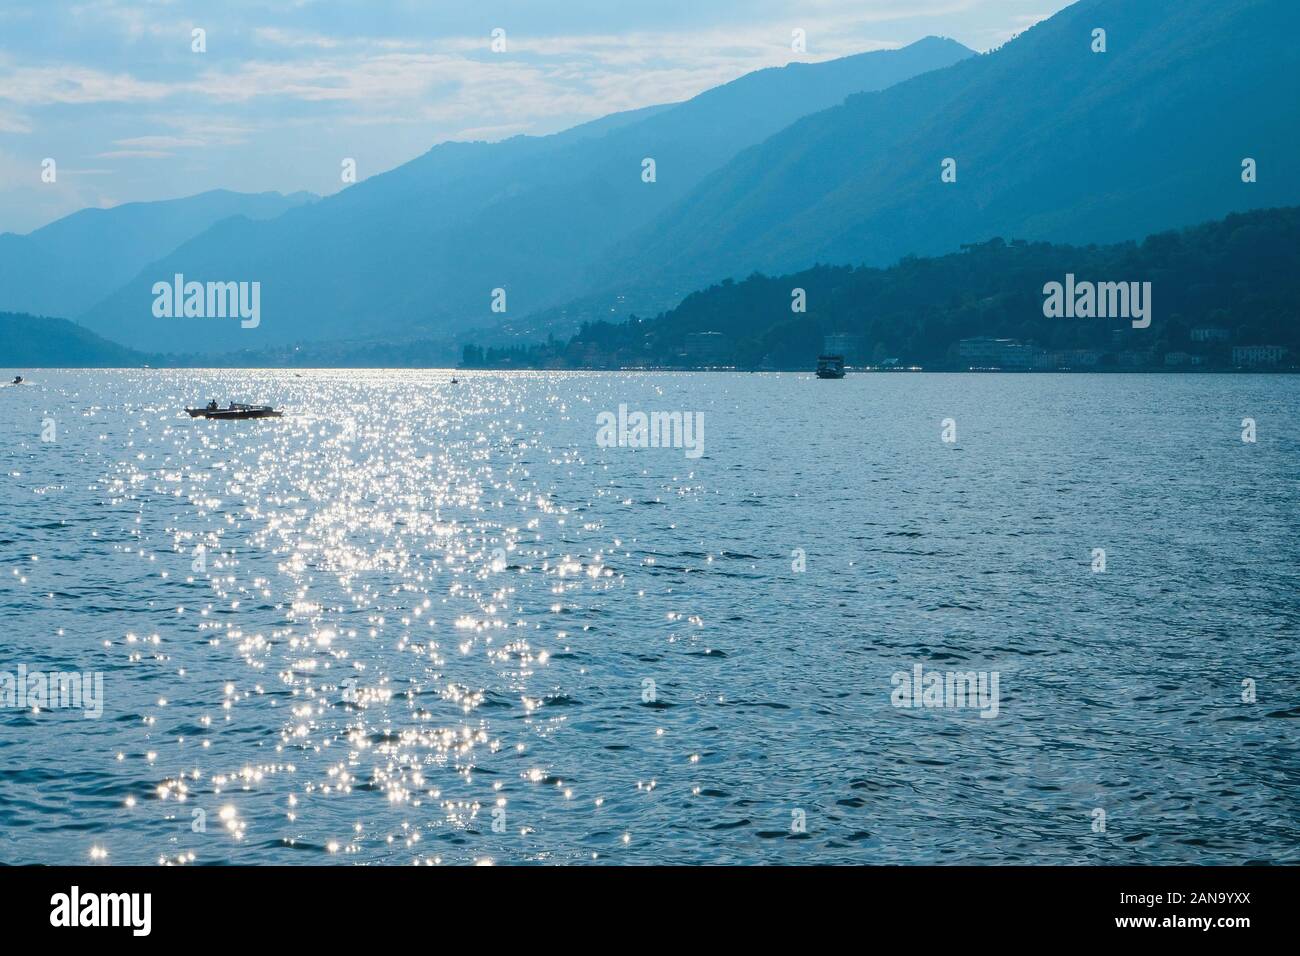 Hermosa vista del Lago de Como o Lago di Como, atracción turística popular en Lombardía, al norte de Italia. Foto de stock